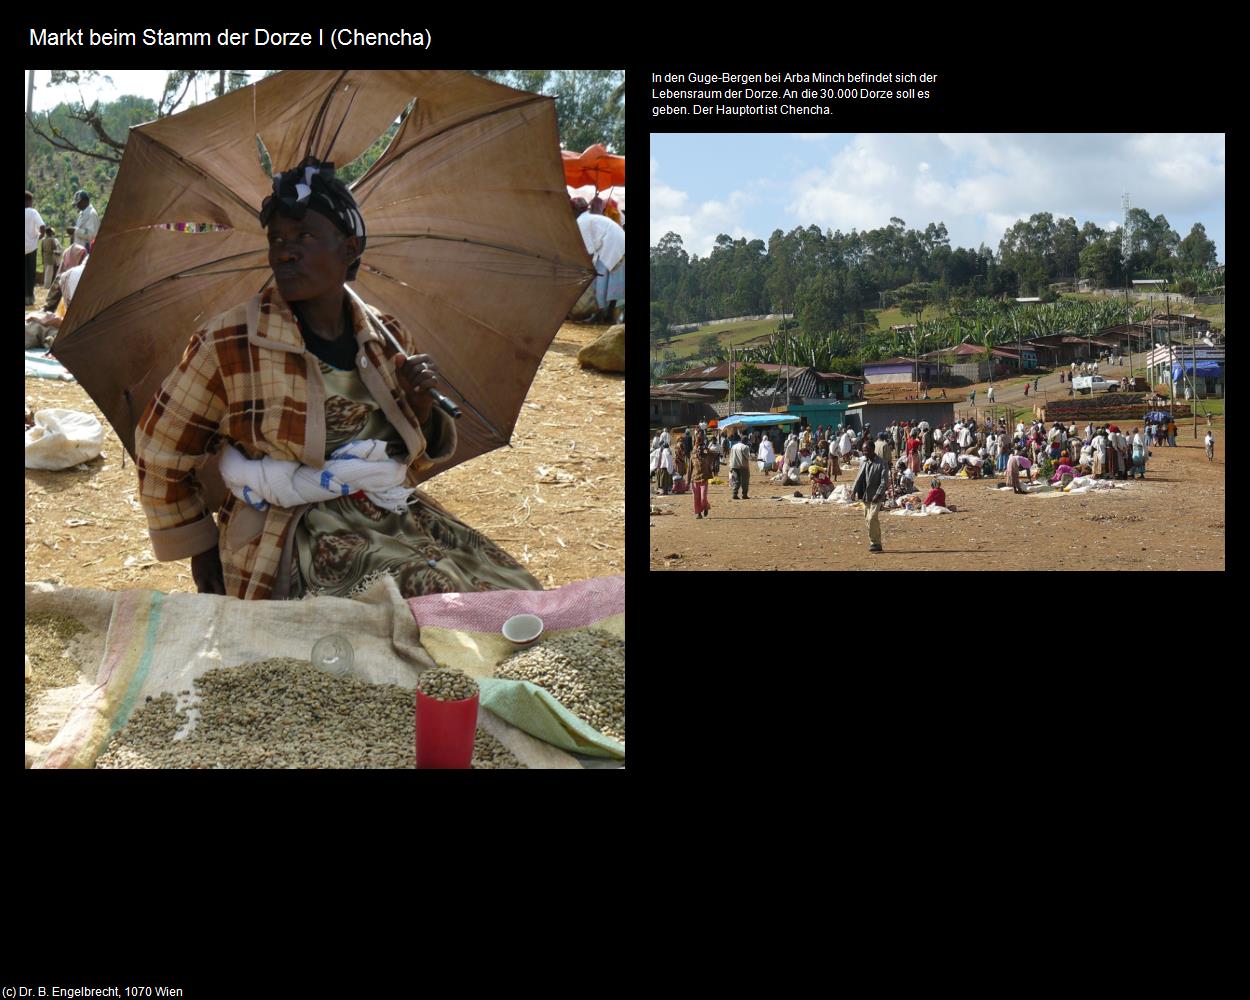 Markt beim Stamm der Dorze I (Chencha) in Äthiopien